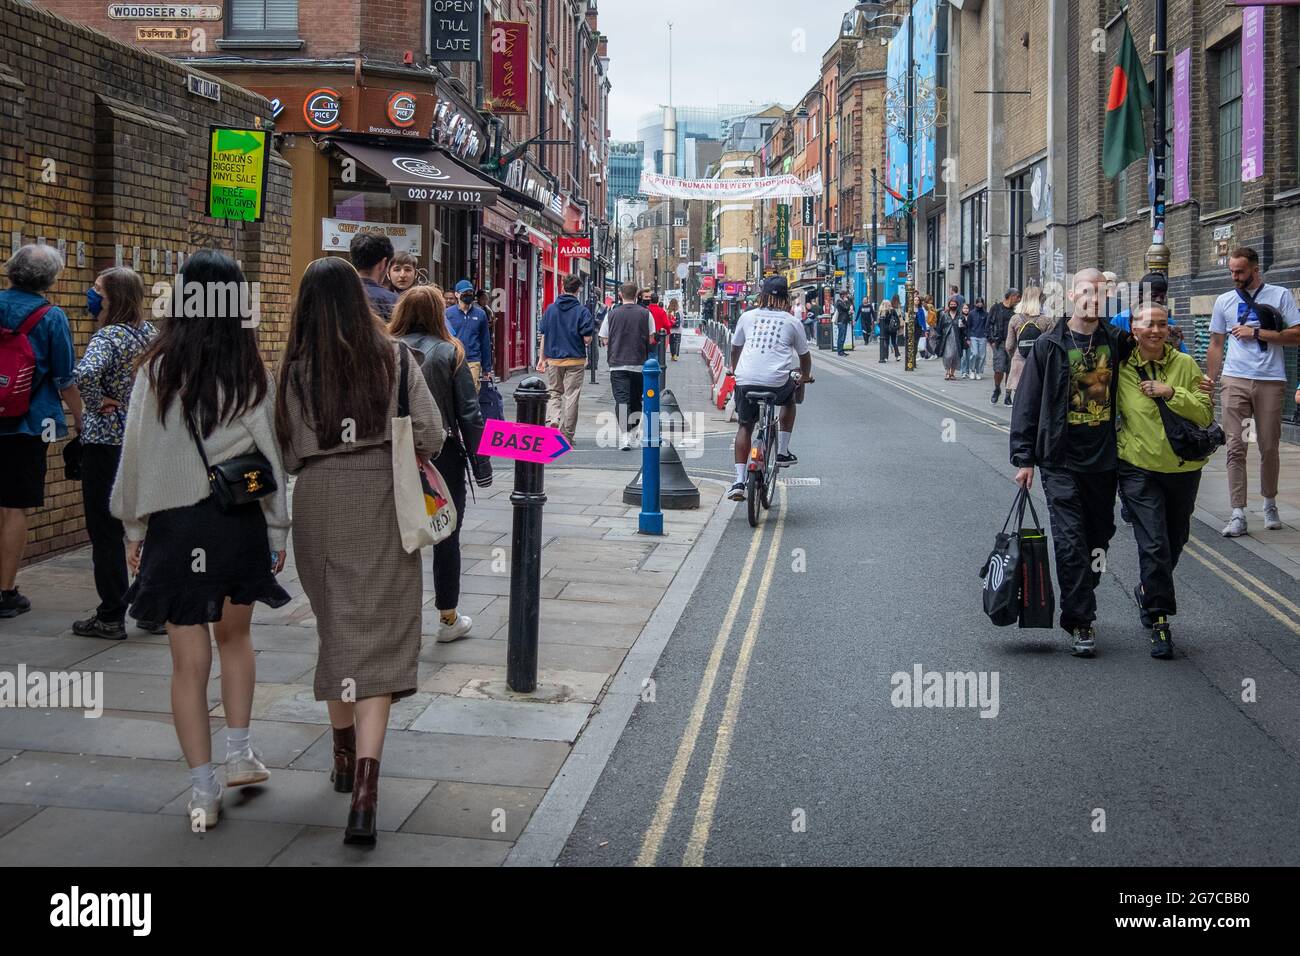 London - Juli 2021: Geschäftige Straßenszene im Osten Londons auf der Brick Lane, einem trendigen Viertel mit Geschäften und Märkten in Shoreditch Stockfoto